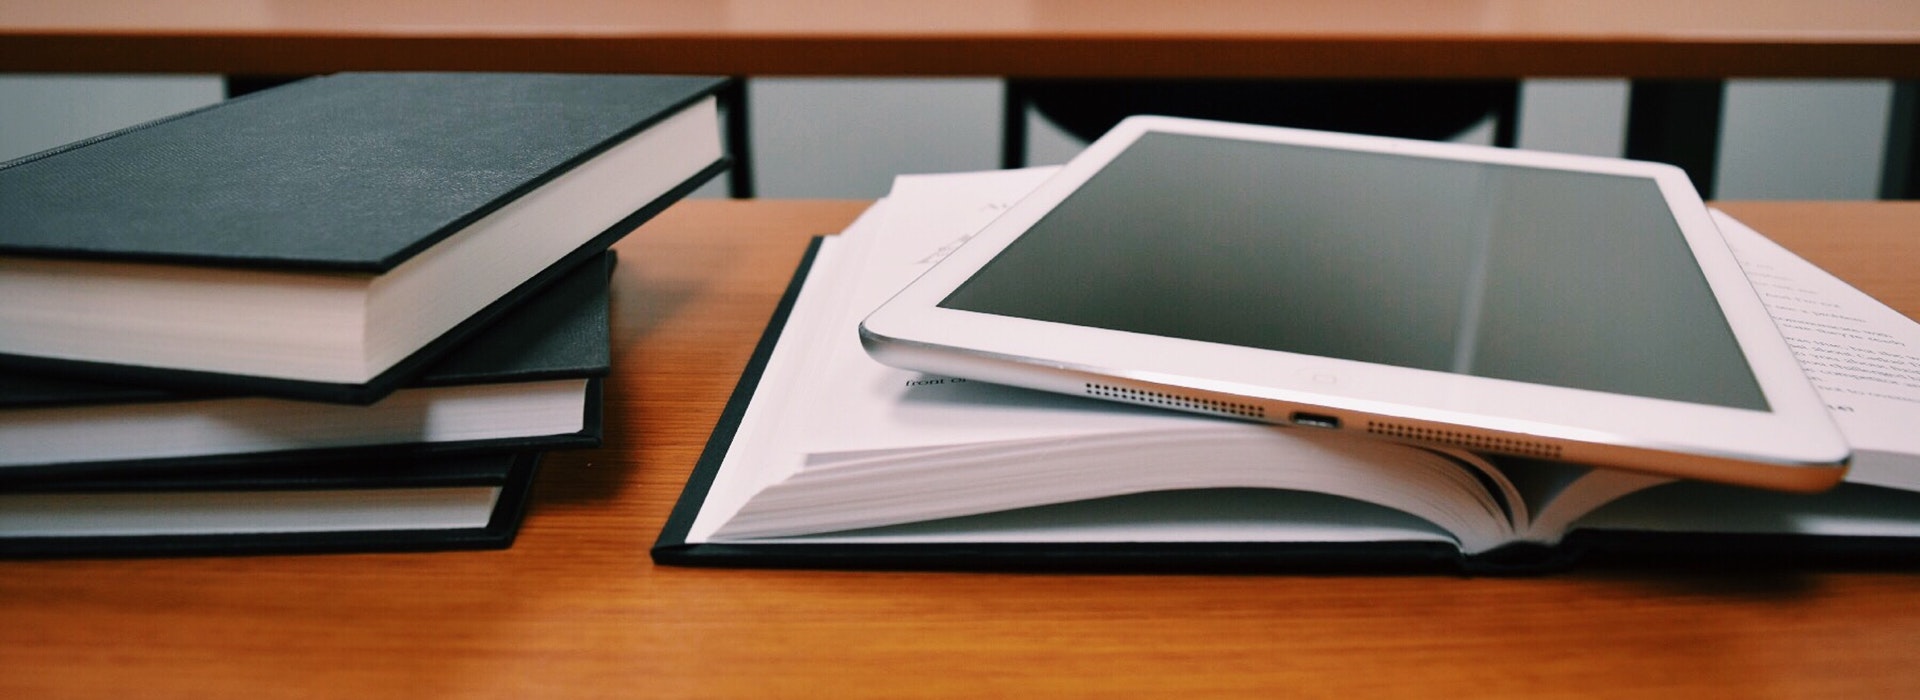 Livres noirs et un iPad blanc empilés sur un bureau en bois.